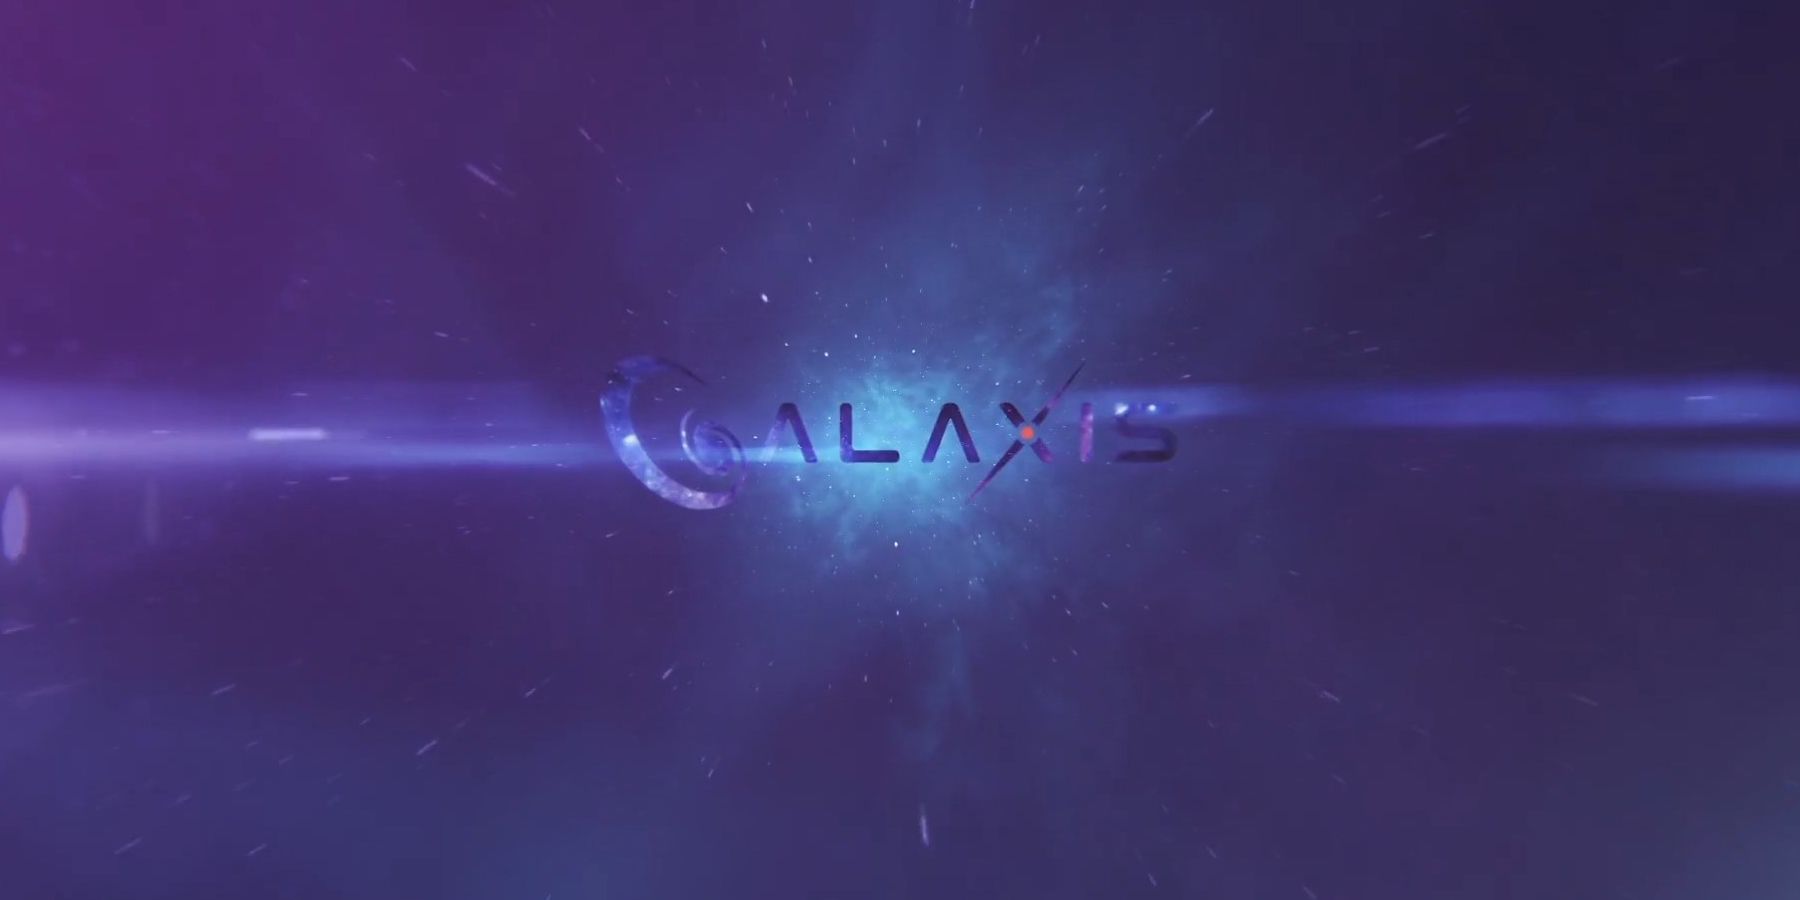 Συνέντευξη Galaxis: Διευθύνων Σύμβουλος Max Gallardo Λεπτομέρειες Συστήματα Point Platform Streaming, Κοινοτική Μετριοπάθεια και πολλά άλλα